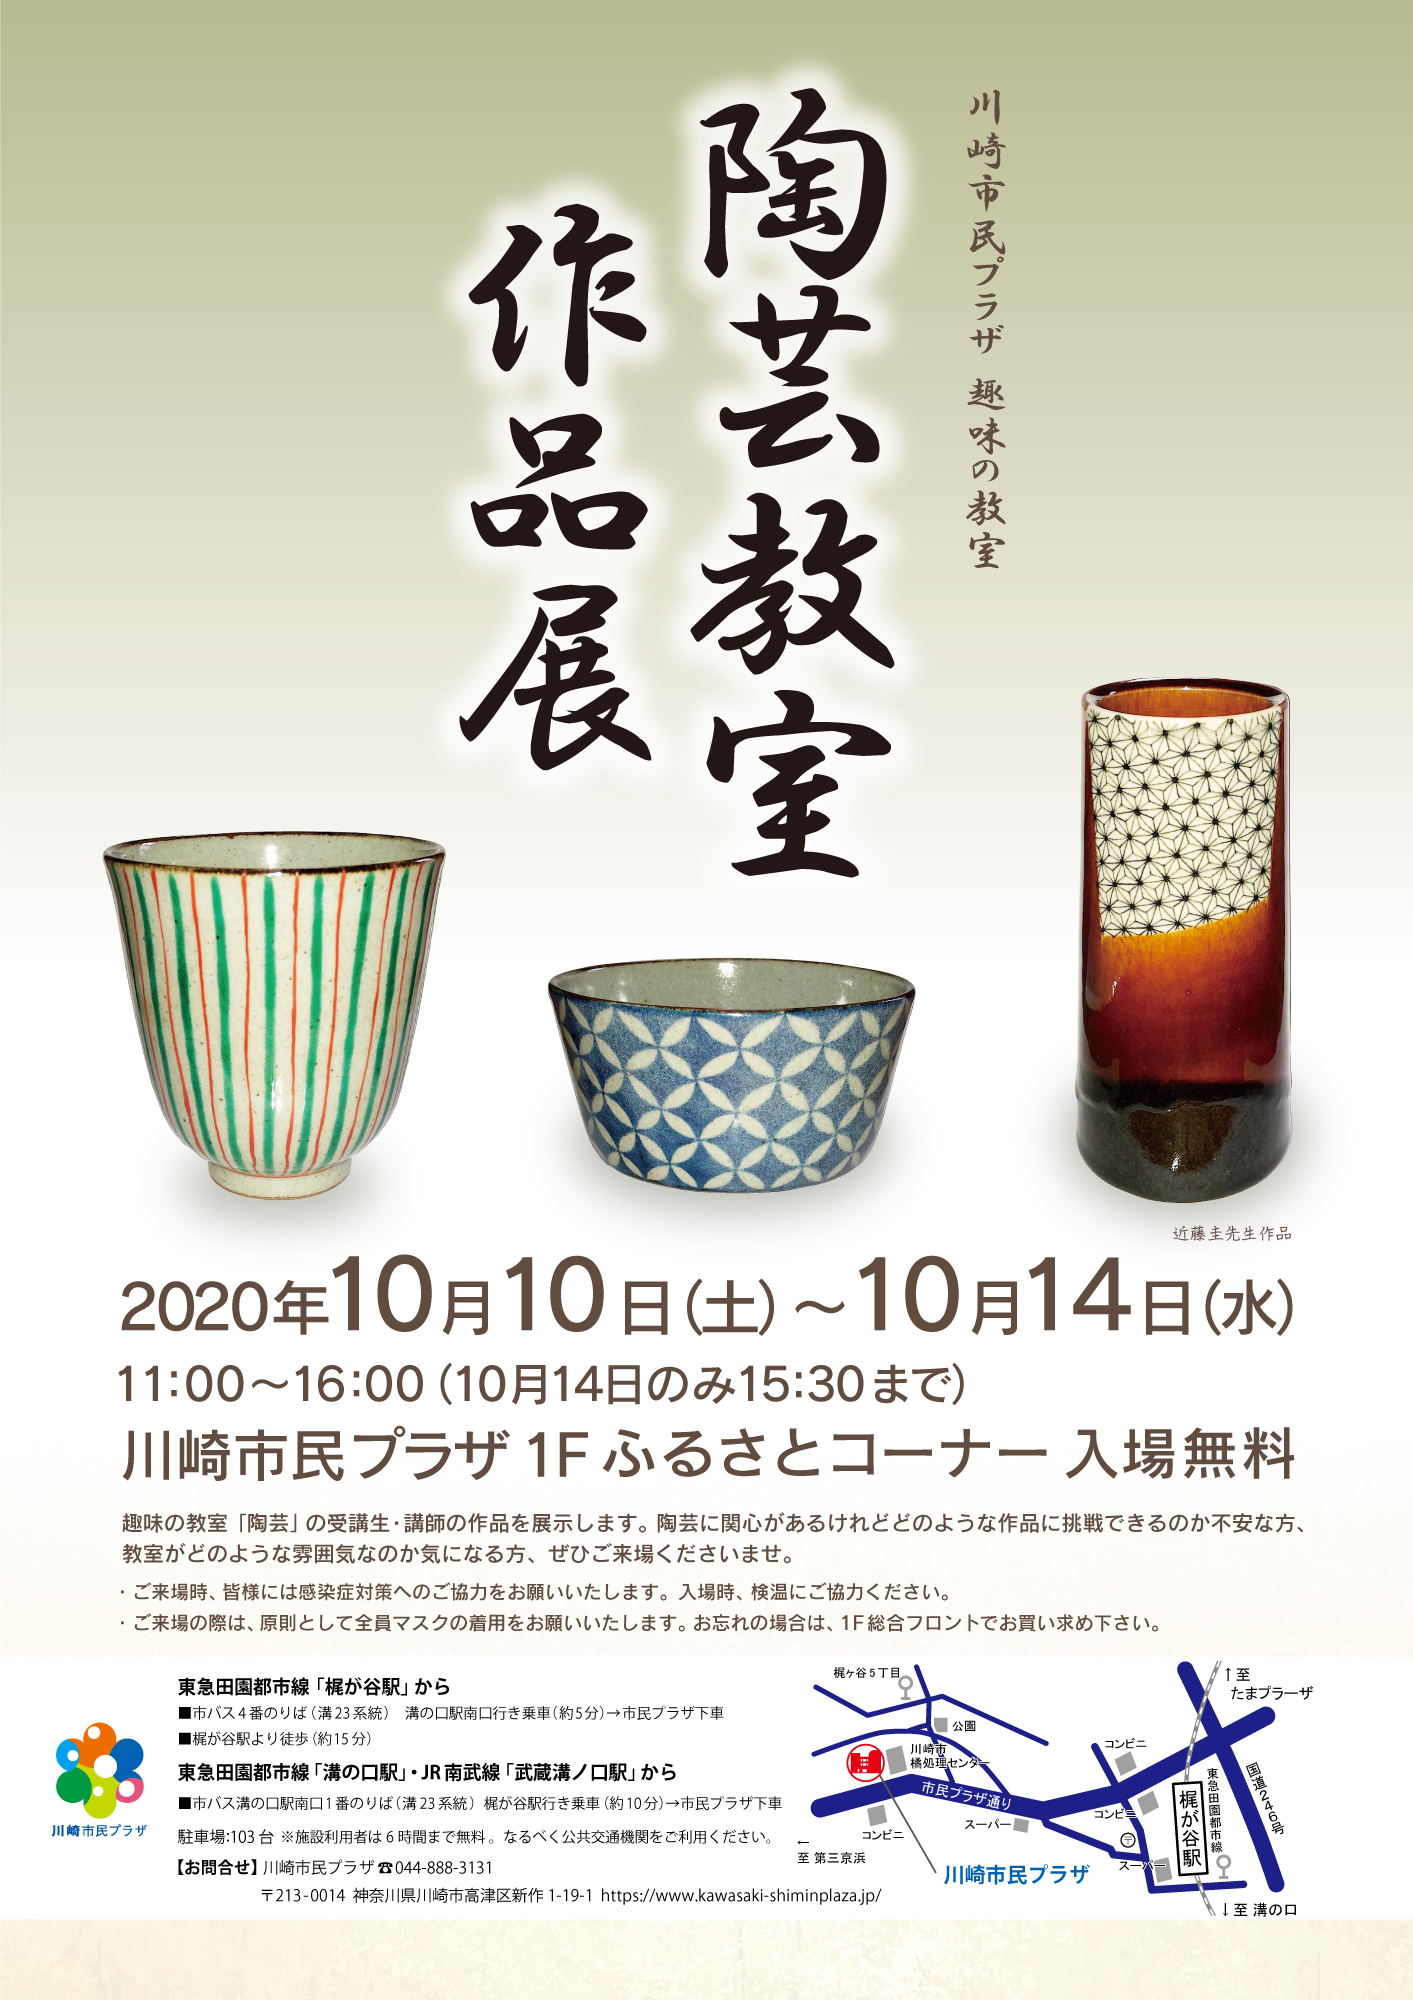 【2020年10月10日-14日】陶芸教室 作品展